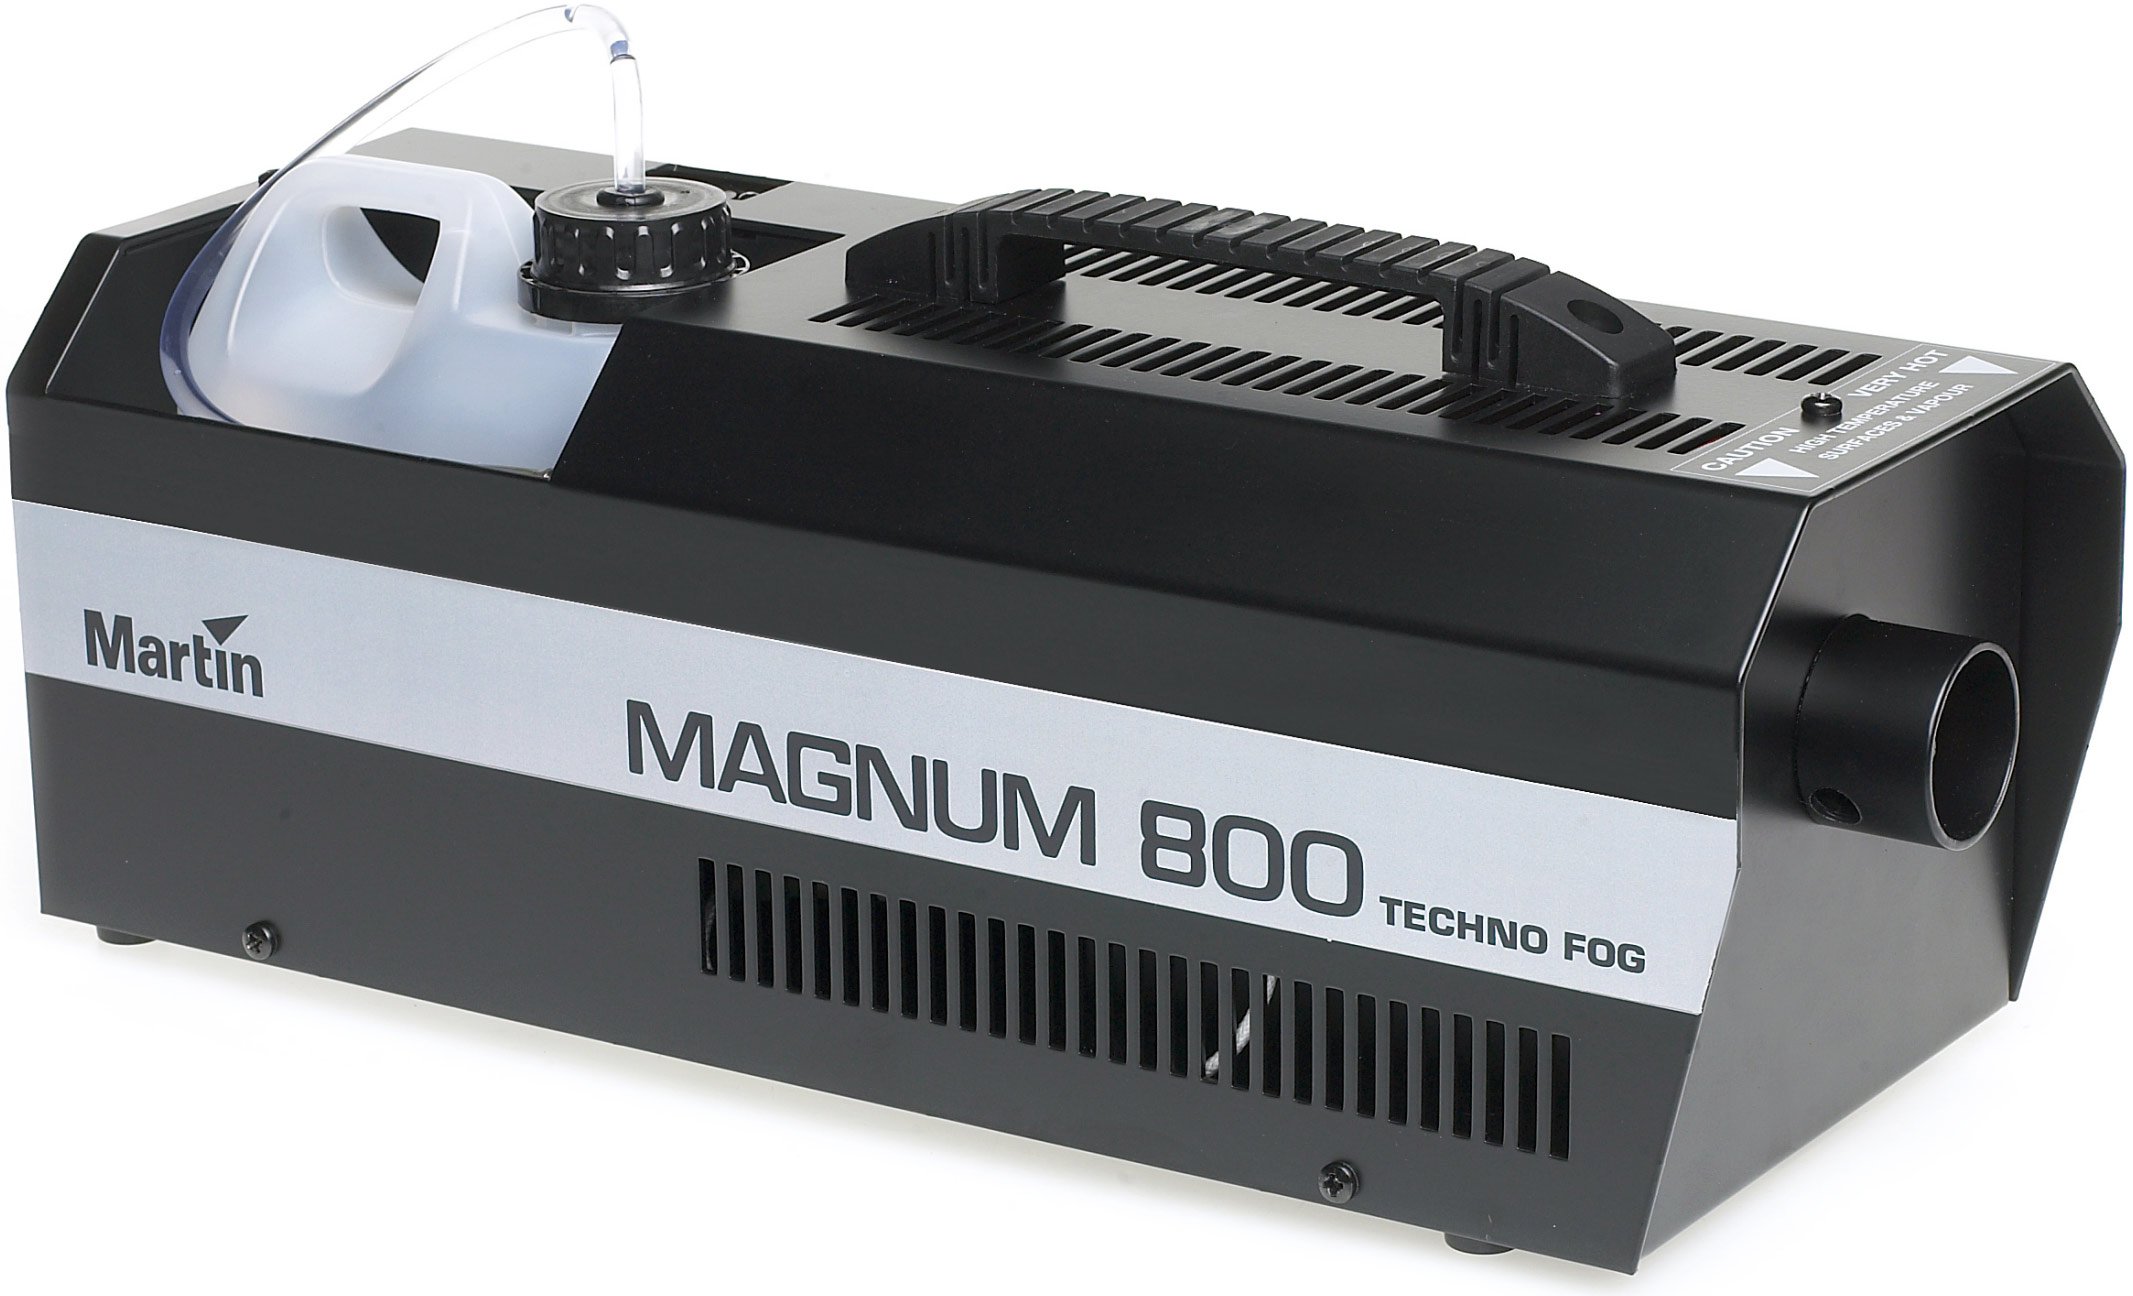 Martin Magnum 800 Smoke Machine